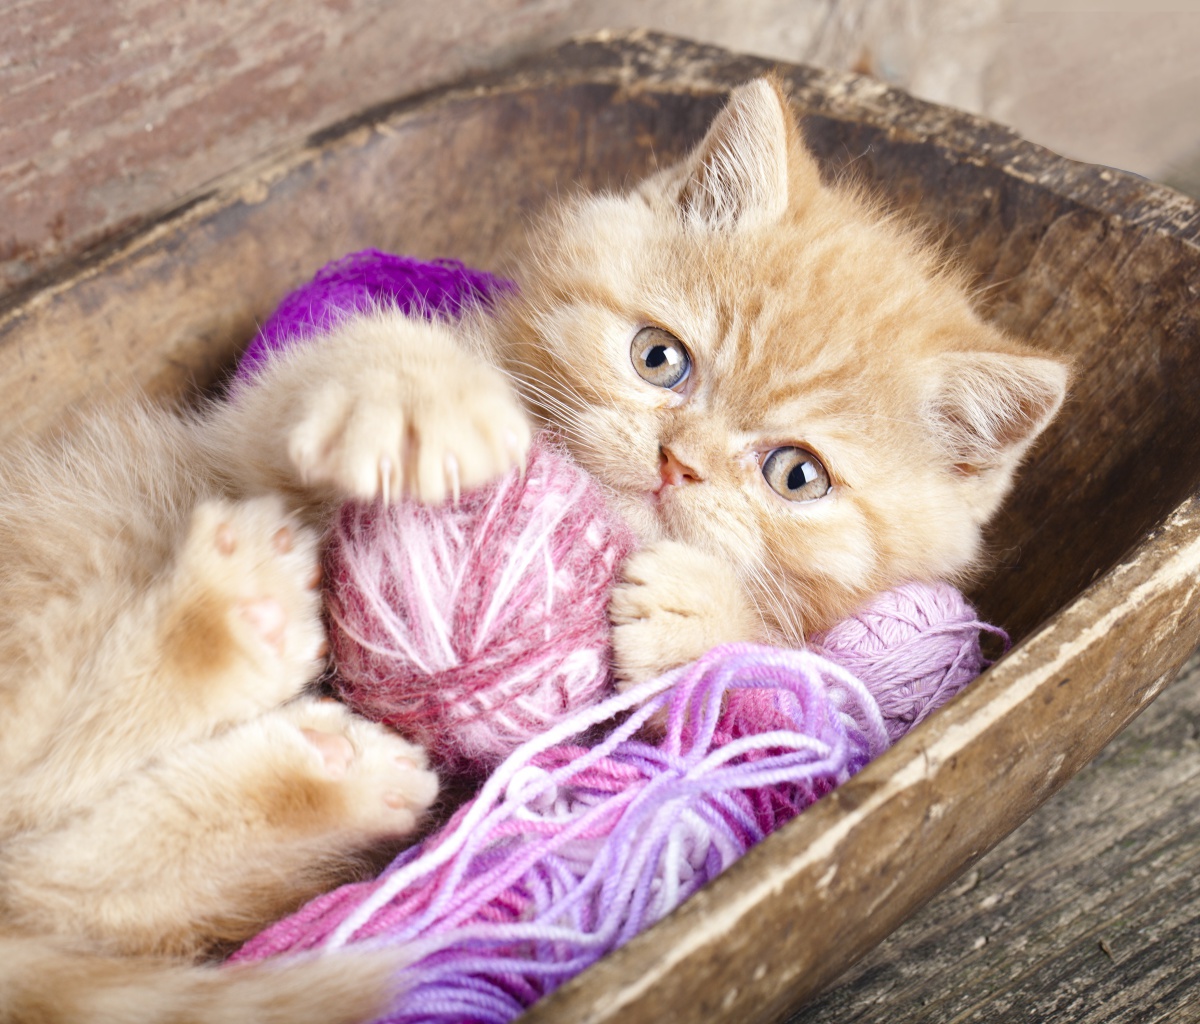 Обои Cute Kitten Playing With A Ball Of Yarn 1200x1024